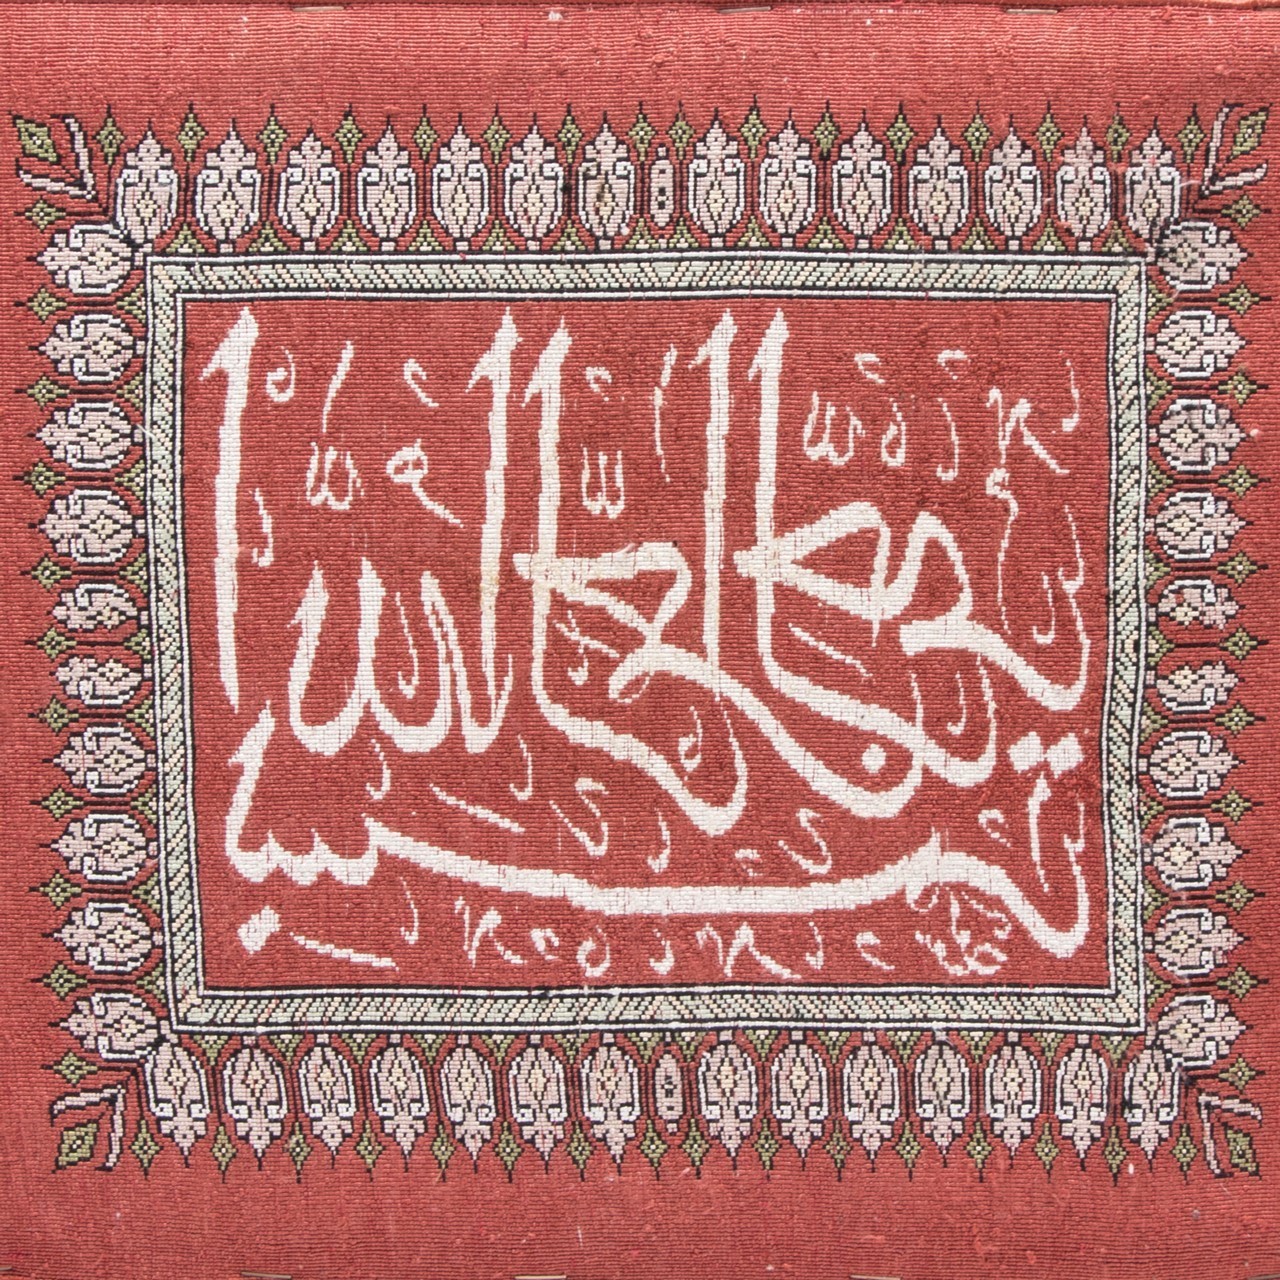 تابلو فرش دستباف بسم الله الرحمن الرحیم کد 901417